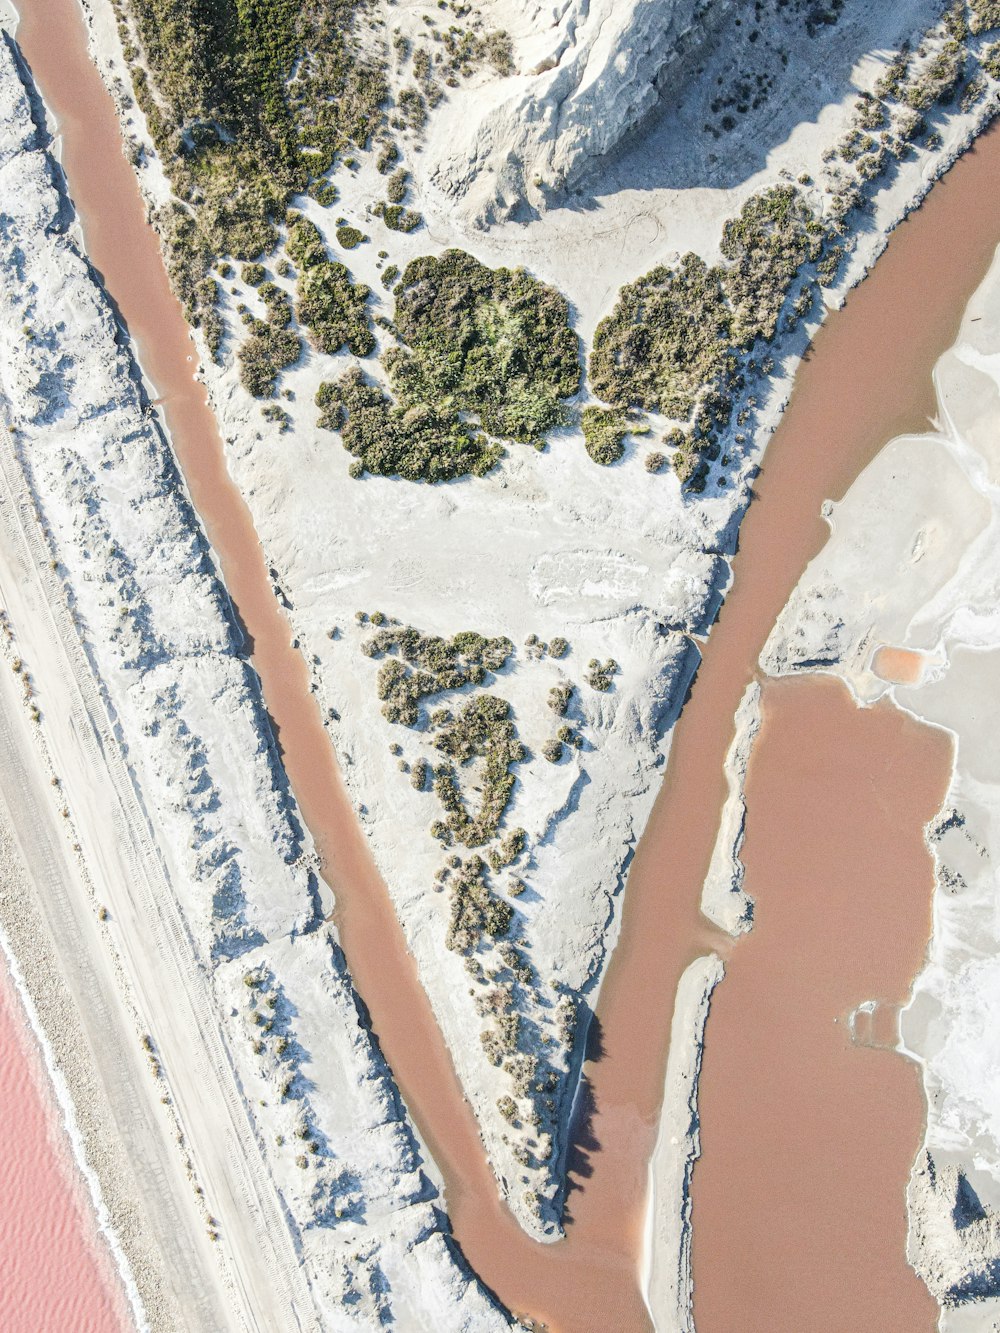 Vue aérienne du plan d’eau pendant la journée